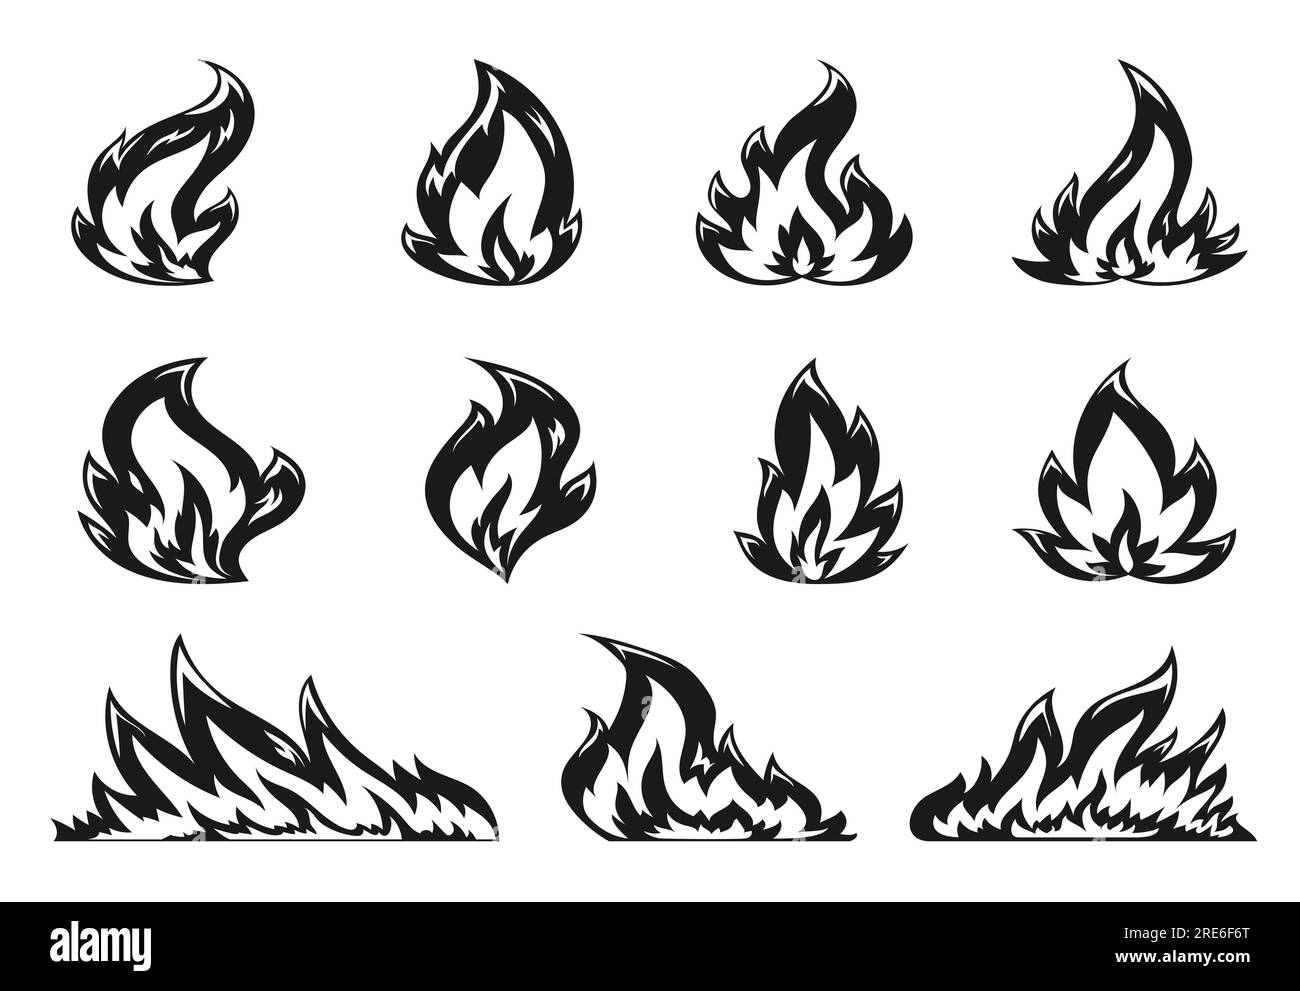 Ensemble d'icônes plates de feu de camp de dessin animé. Flamme chaude sur fond blanc. La chaleur enflammée fait feu de forêt et feu de joie, brûle des silhouettes noires puissantes. Émoticône de feu flamboyant de forme variée, timbre, pochoir Illustration de Vecteur